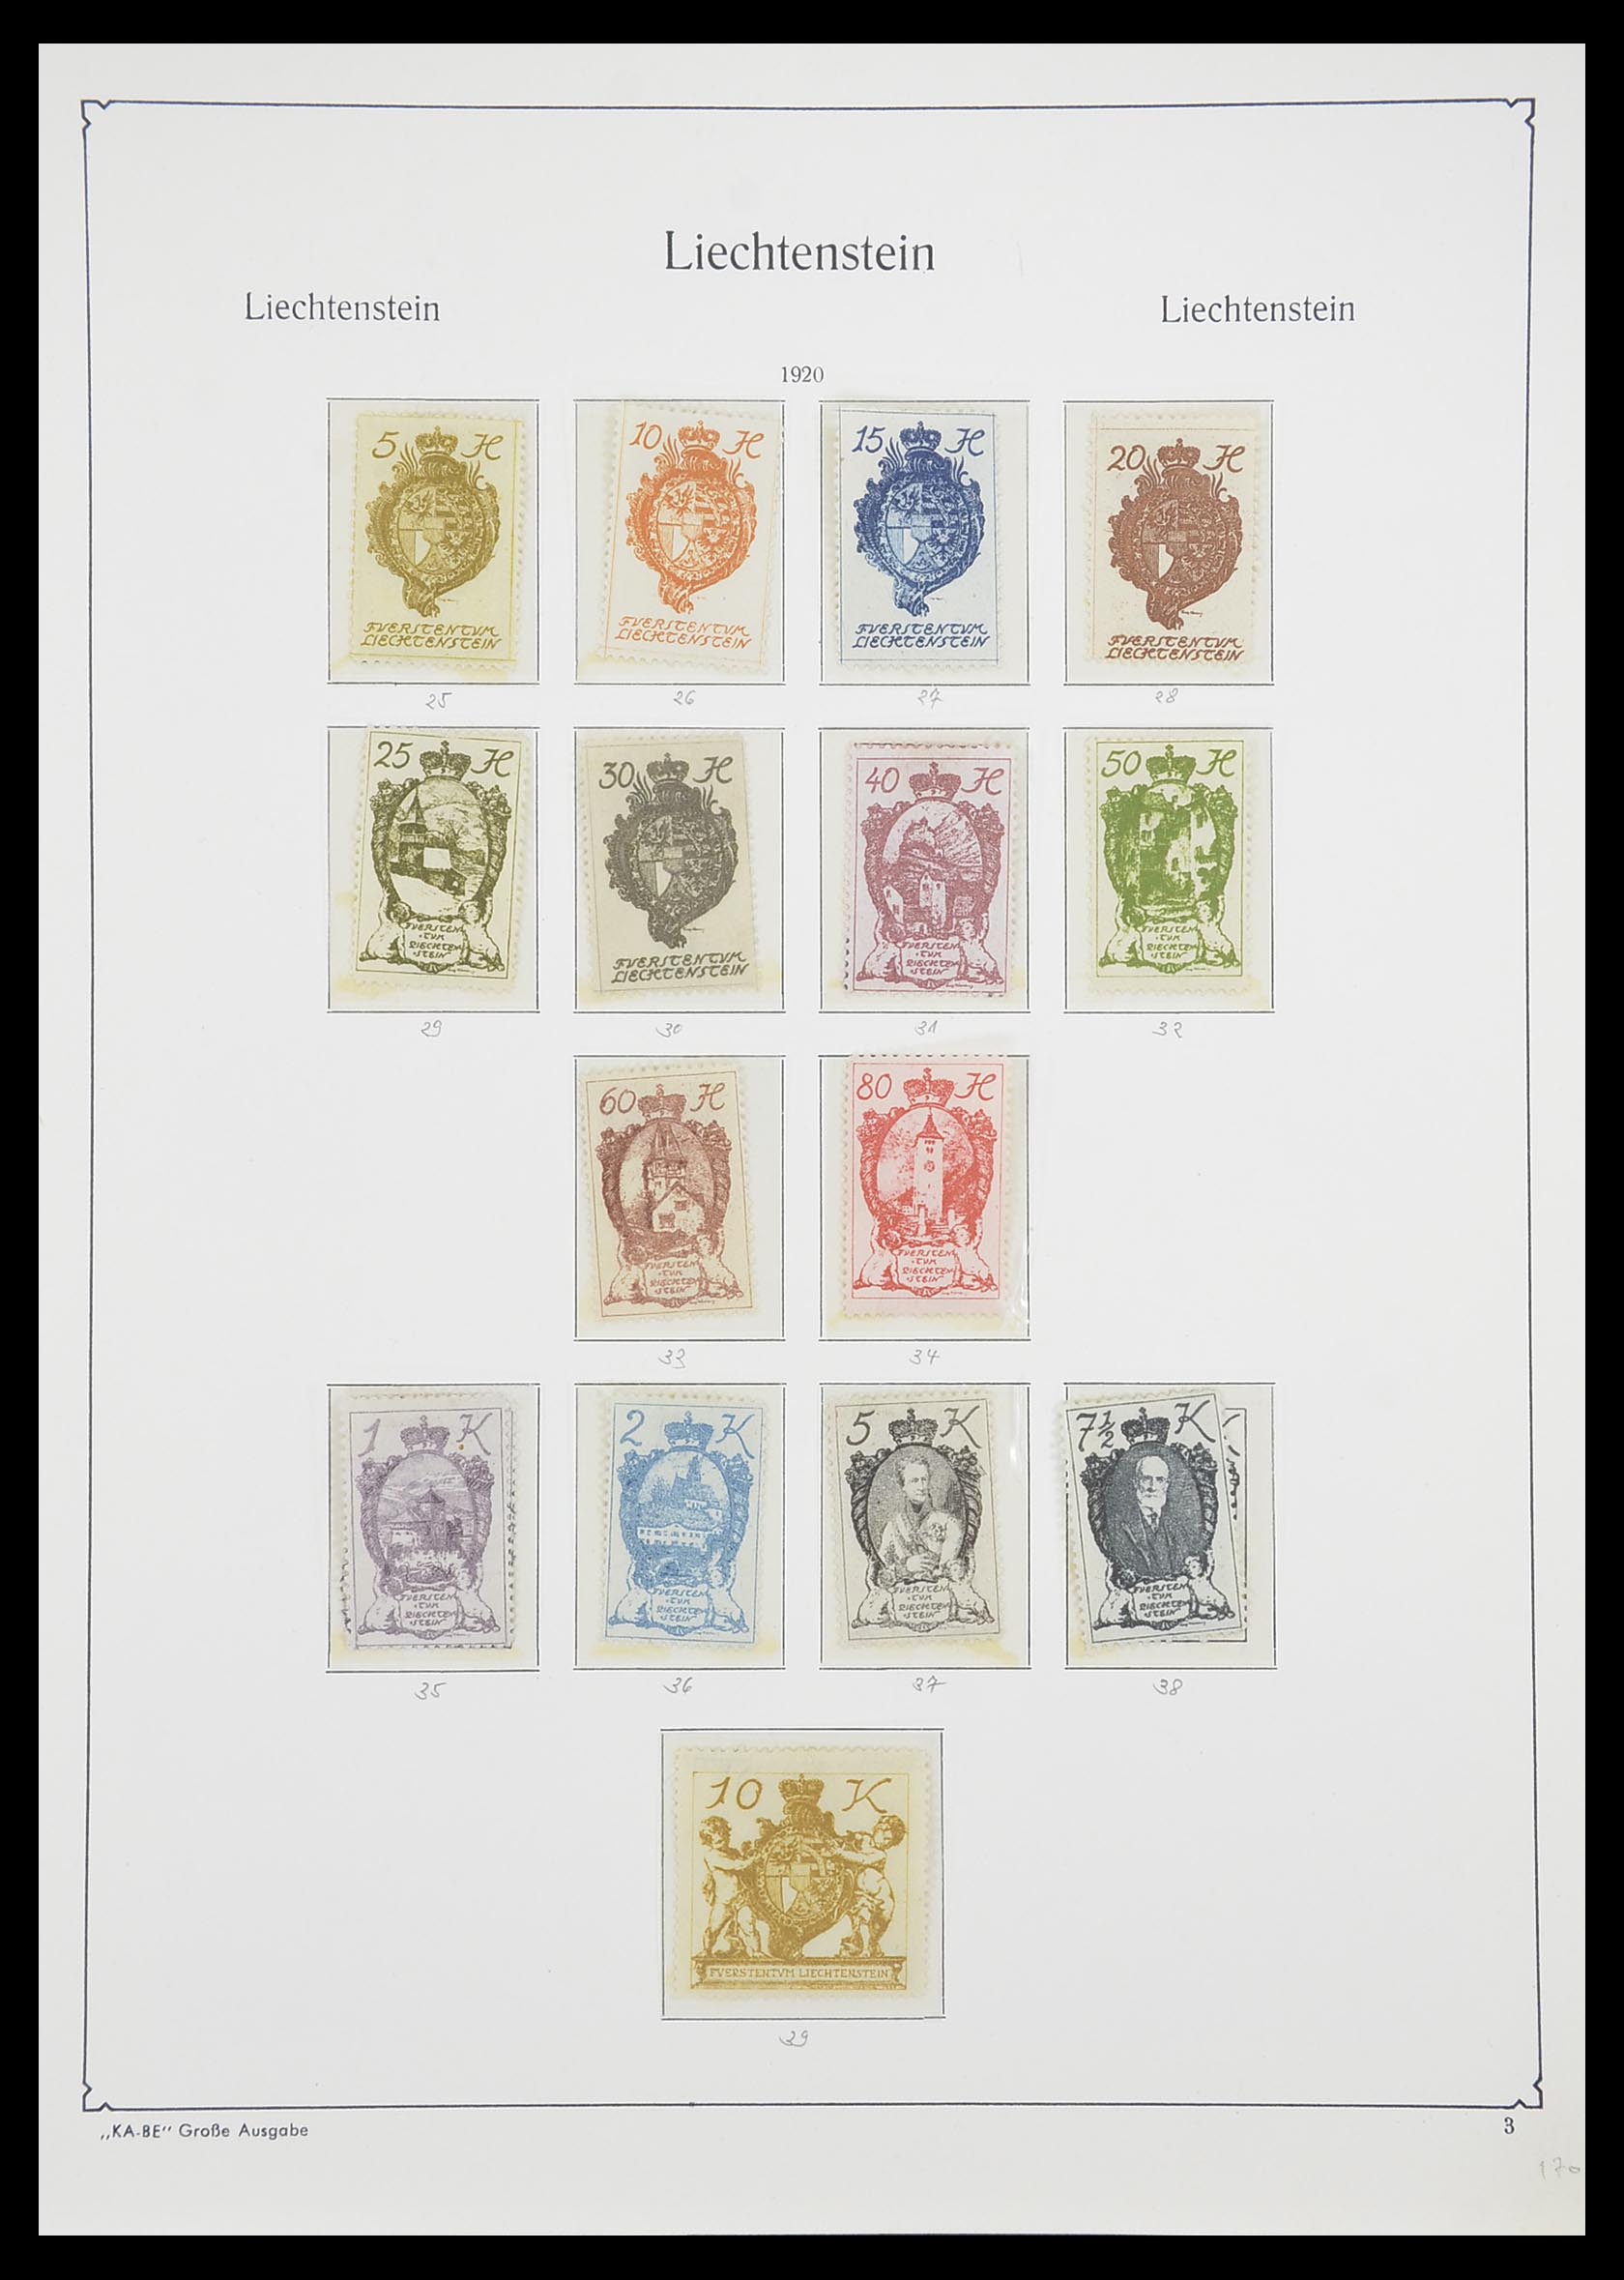 33493 006 - Stamp collection 33493 Liechtenstein 1912-2008.